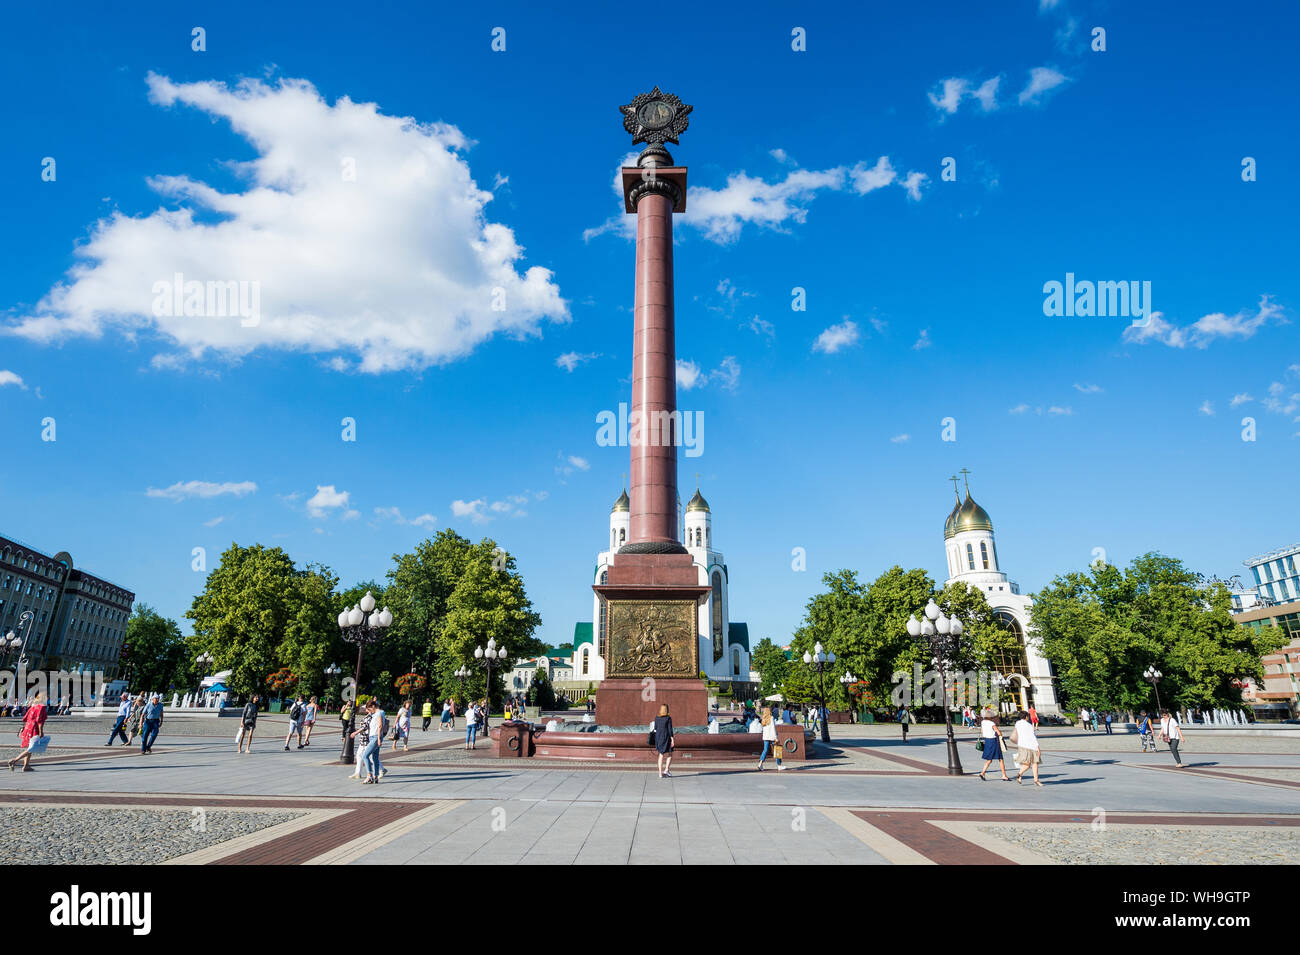 La colonne triomphale, Pobedy Square, Kaliningrad, Russie, Europe Banque D'Images